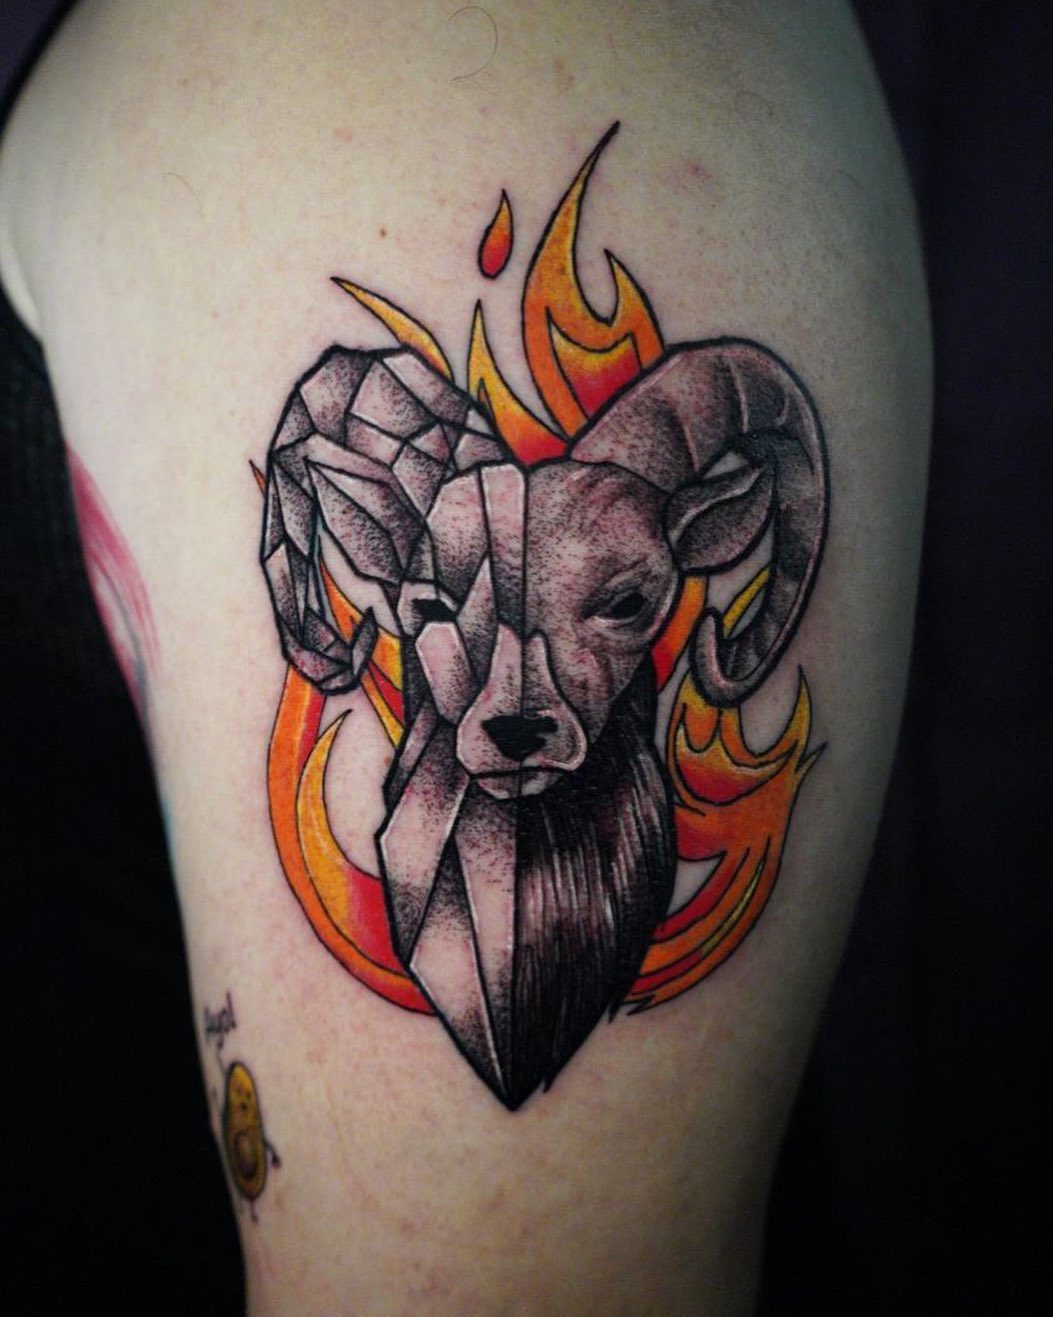 Fuego alrededor del tatuaje de Aries.